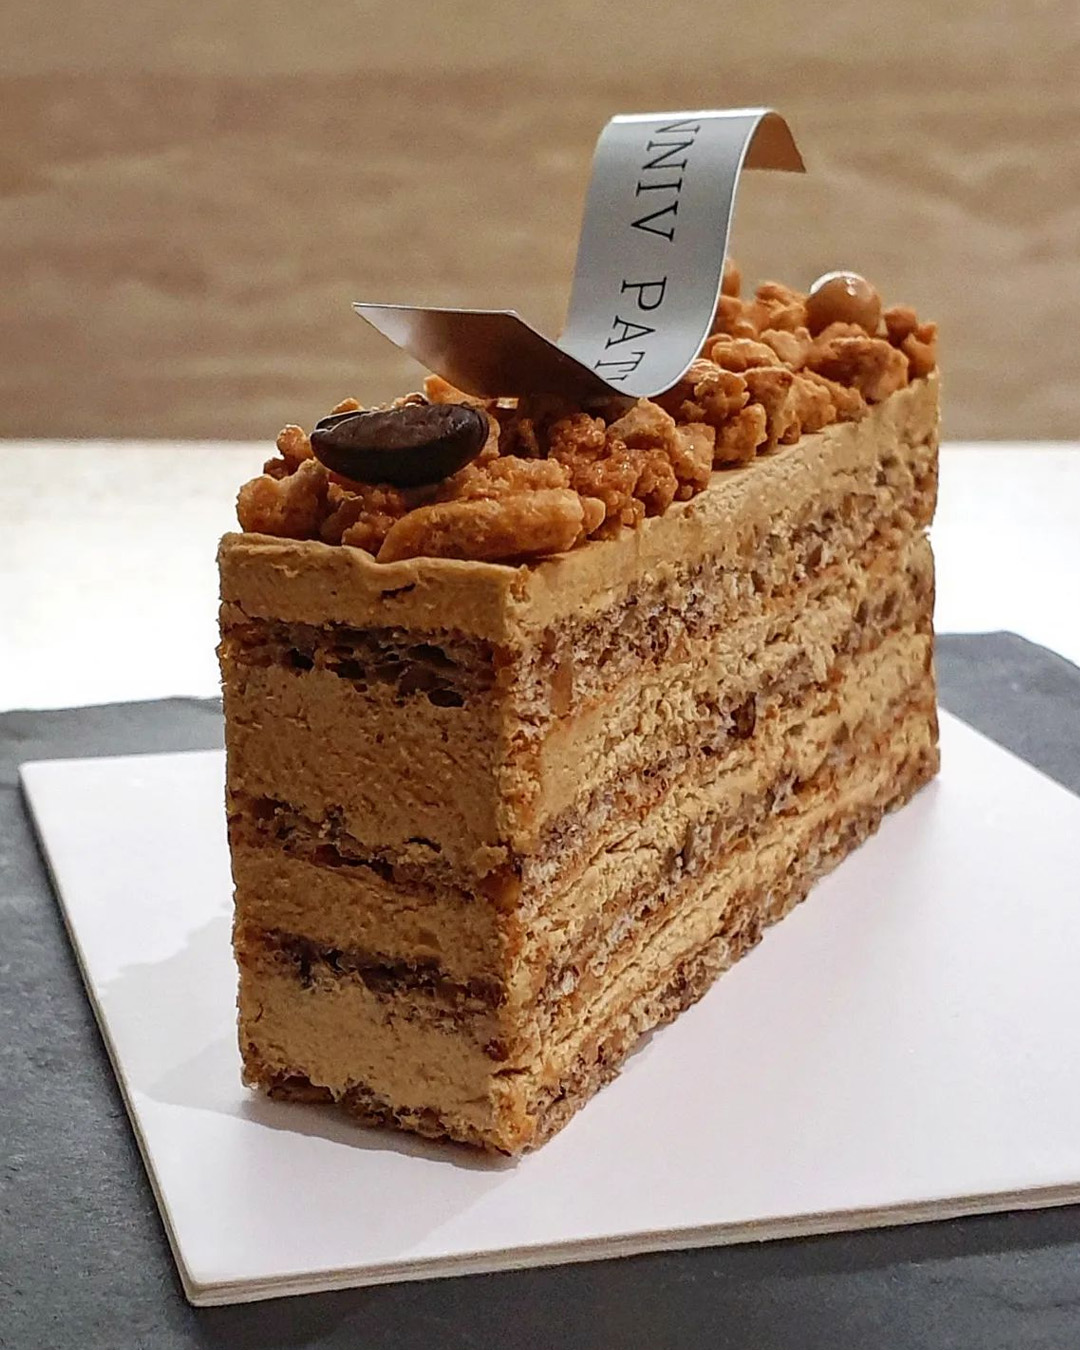 Chocolate Royal Cake with Hazelnut Almond Dacquoise - Wheel of Baking